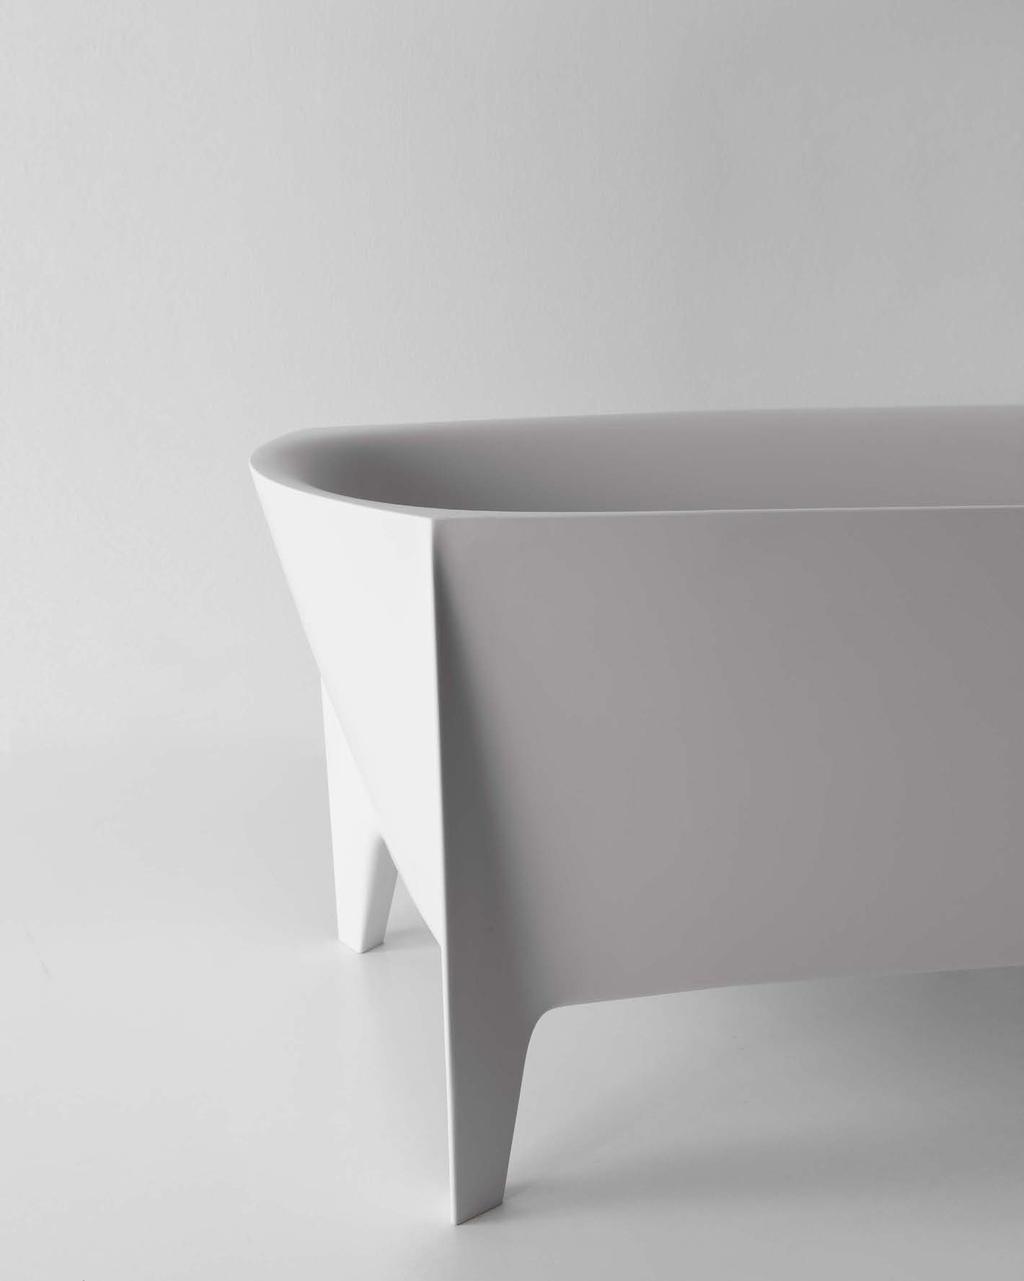 EDONIA _2014 design Mario Ferrarini Una forma inedita, una base rettangolare che viene plasmata e stirata per modificarne la percezione e rendere meno statica la composizione.